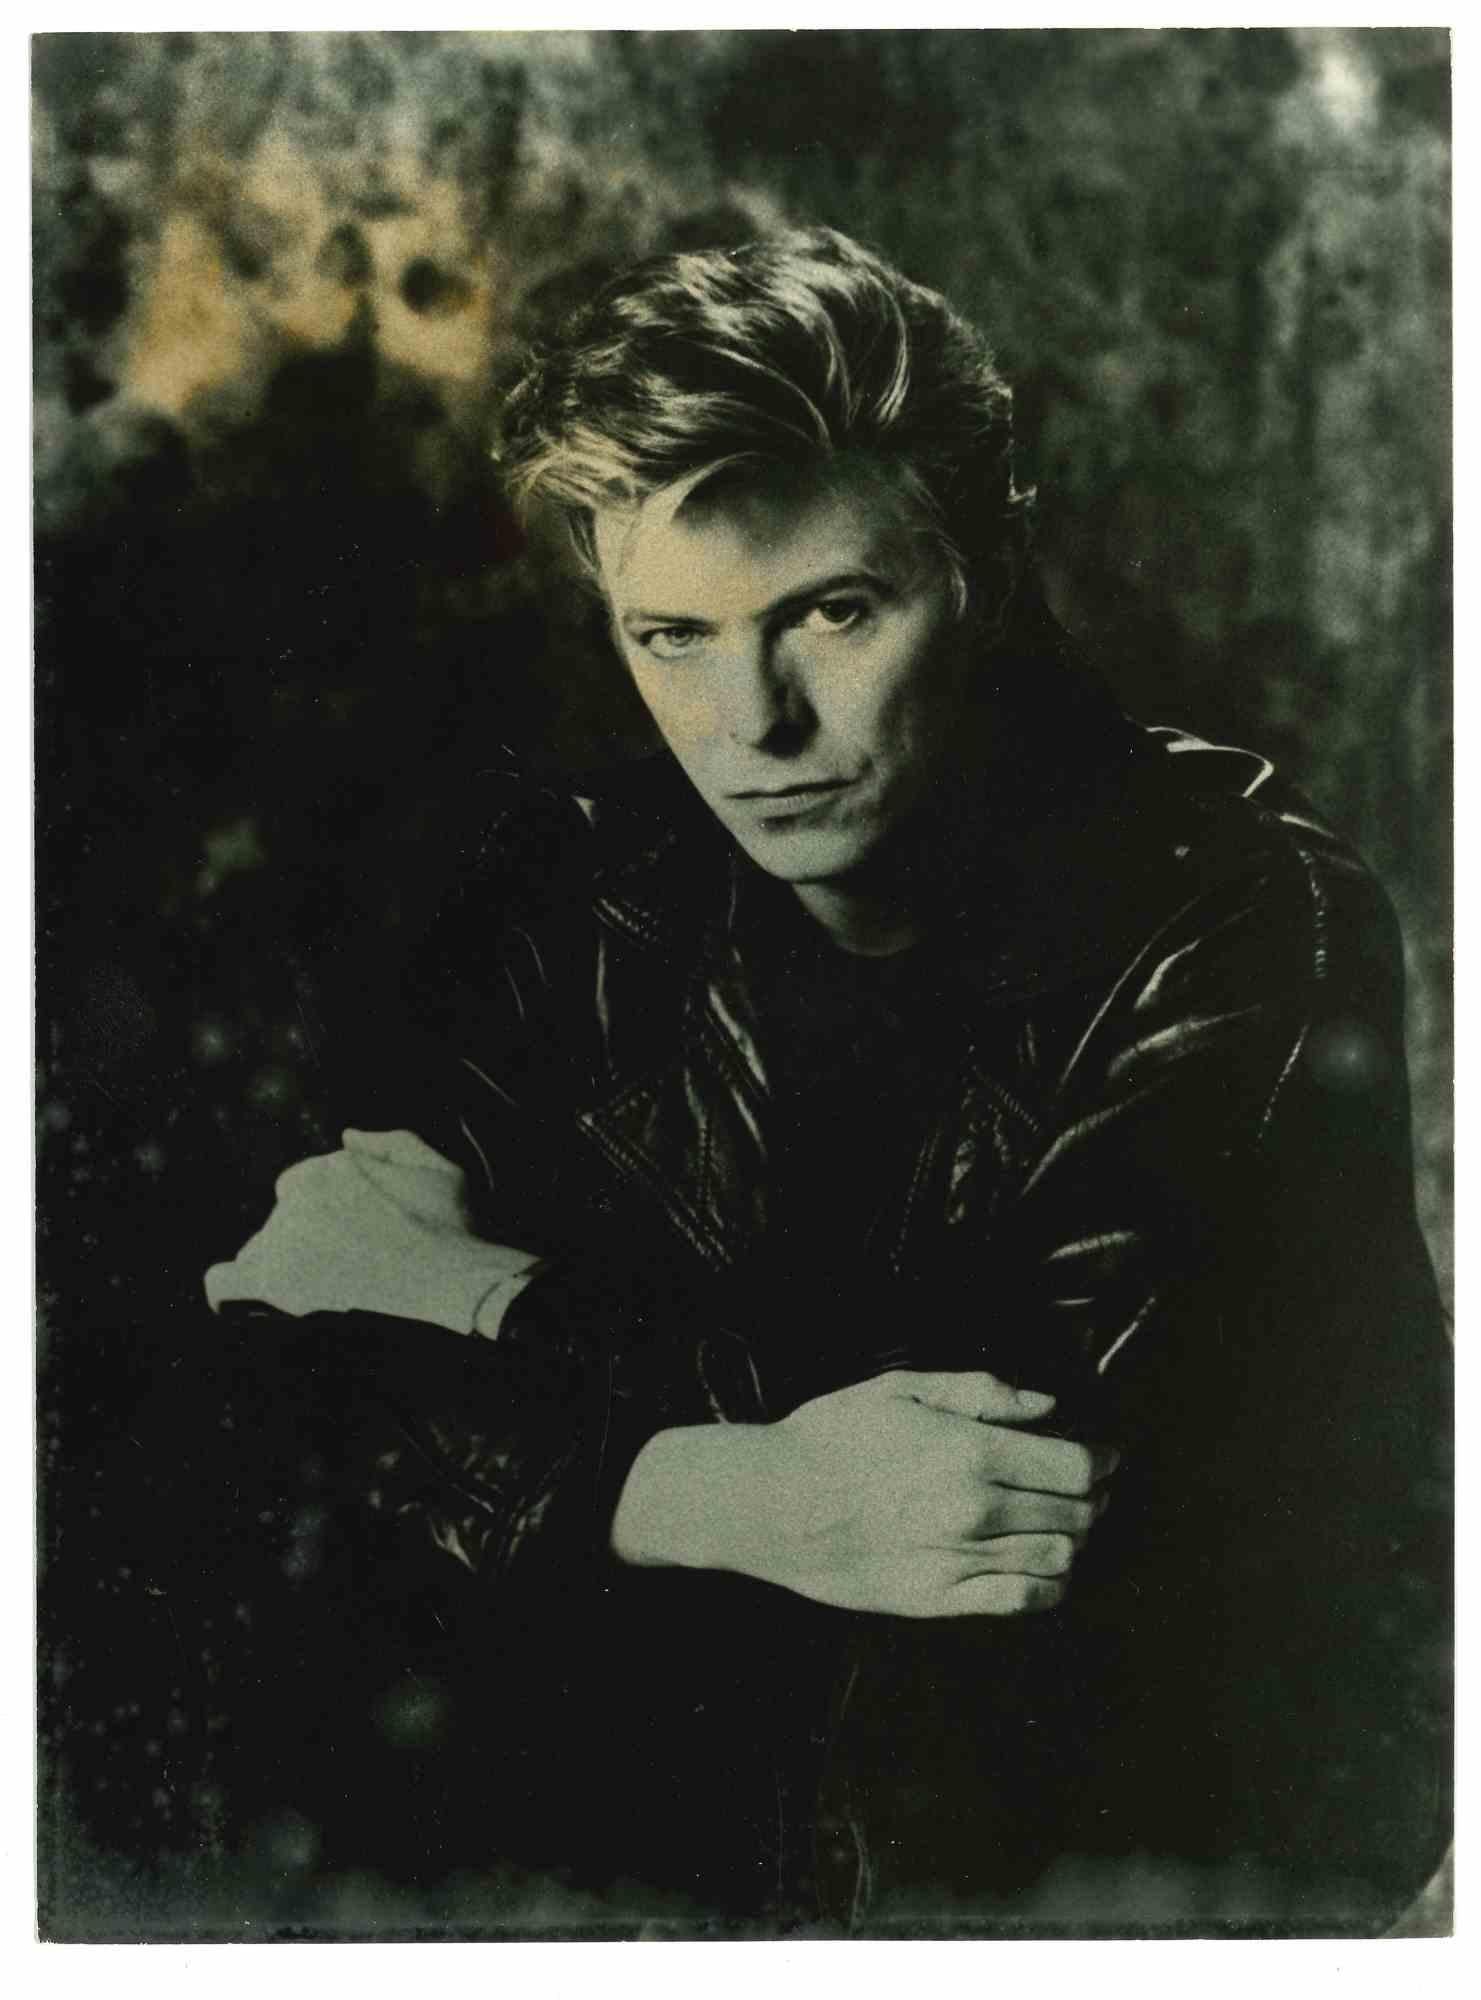 Unknown Portrait Photograph - David Bowie -  Photo- 1970s